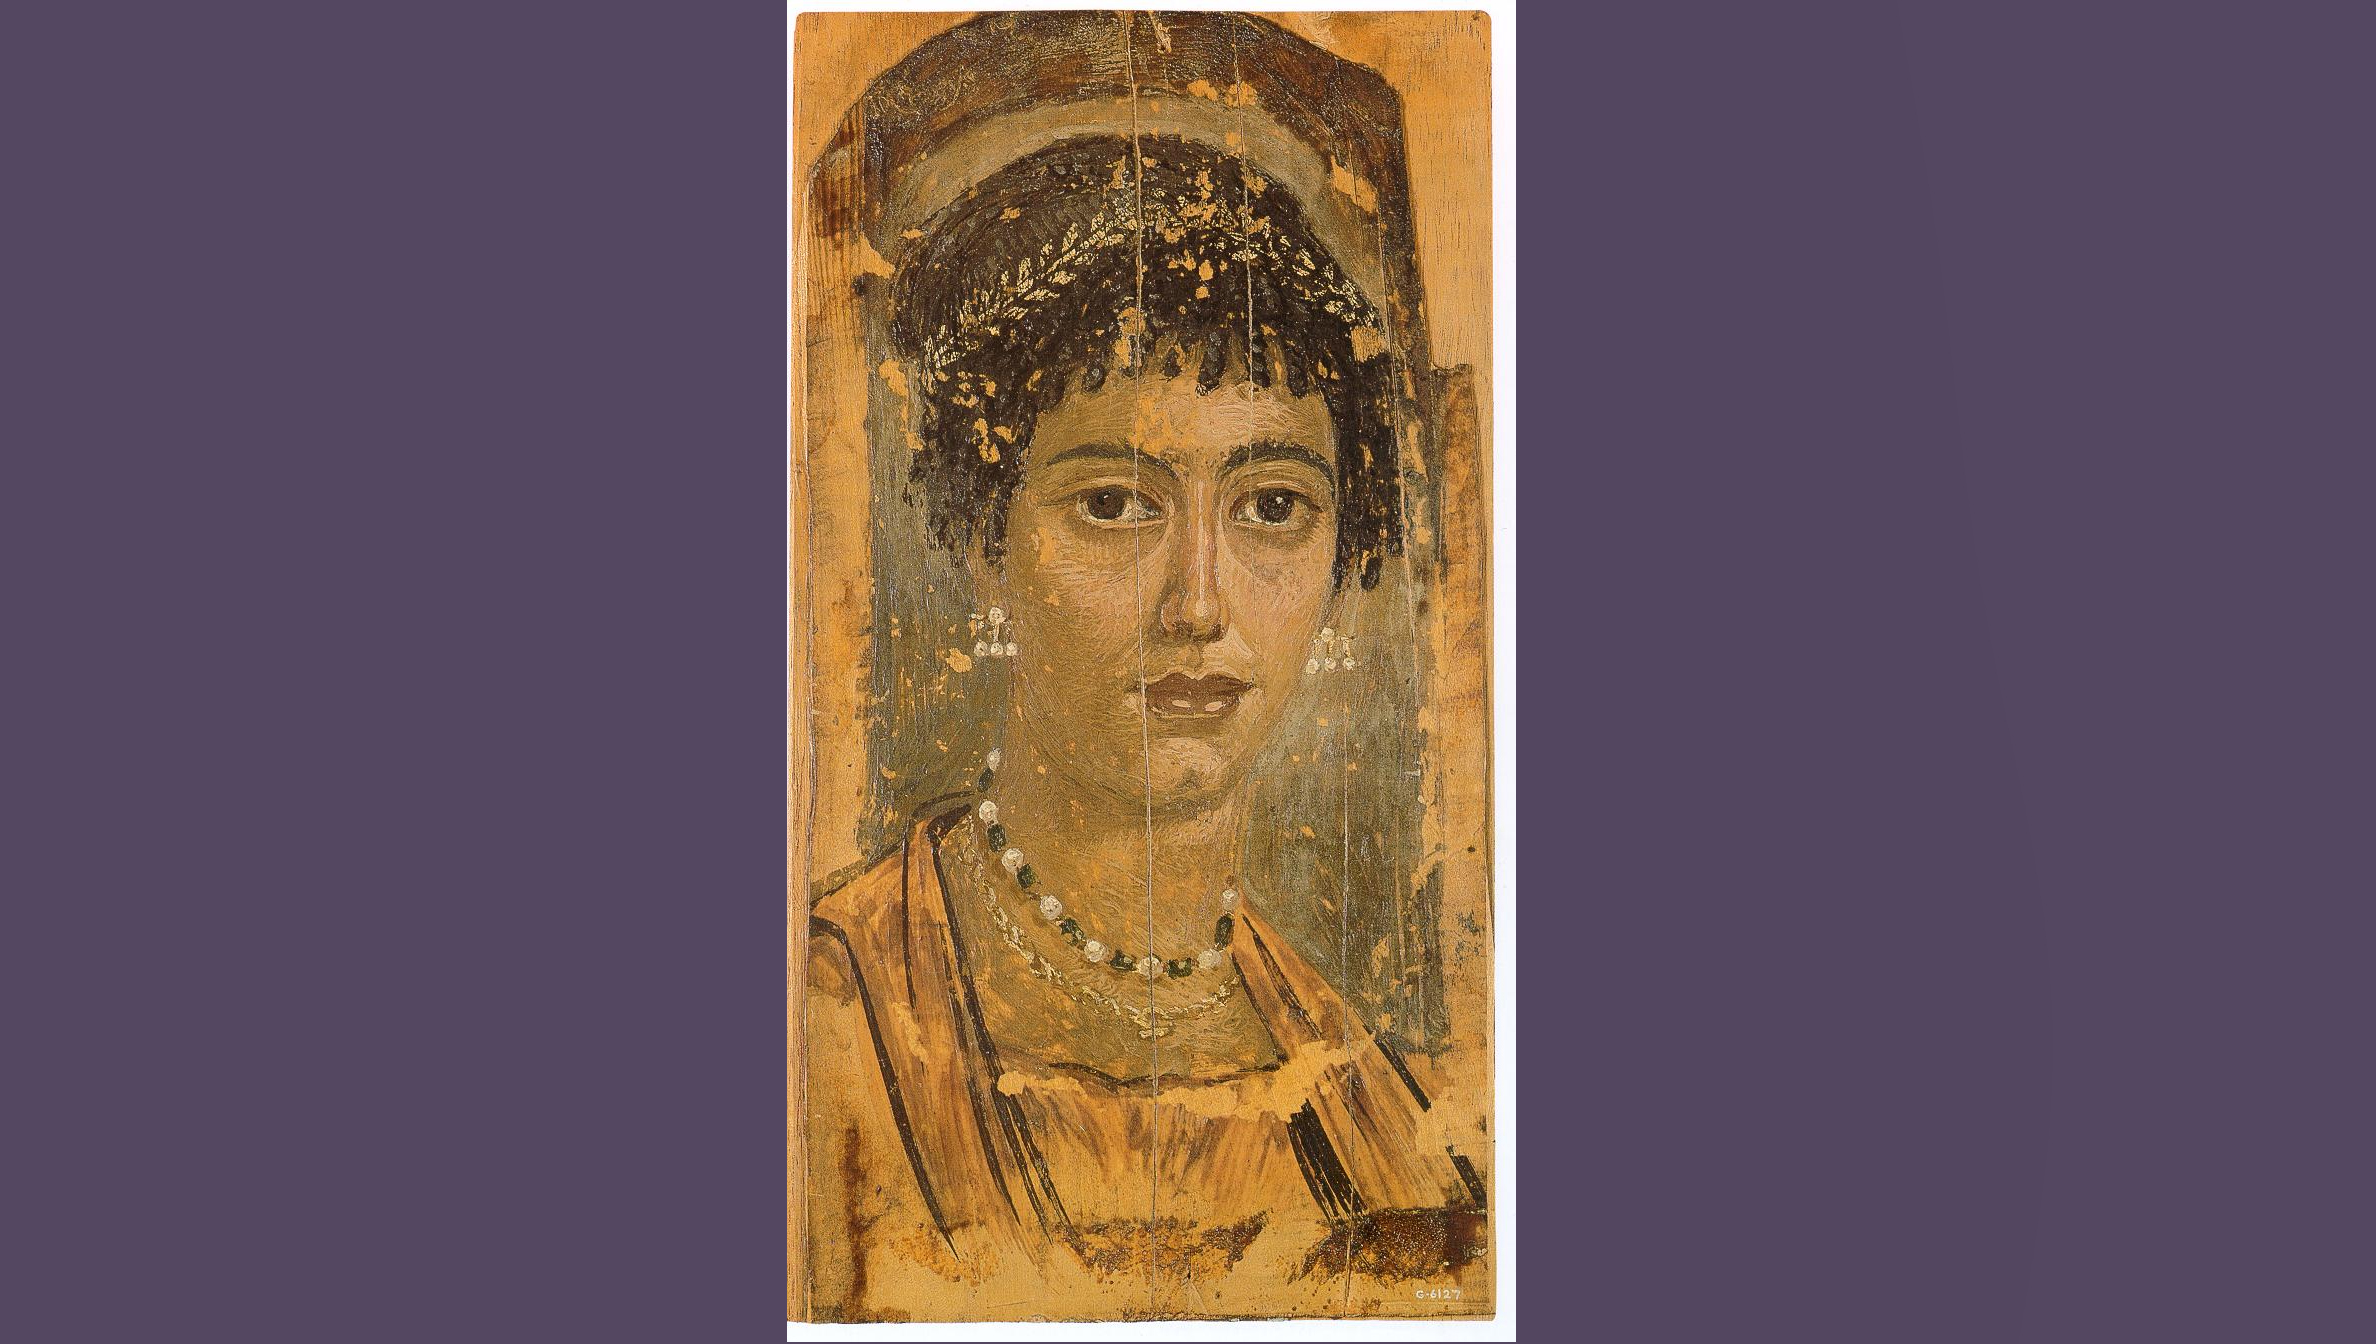 Фаюмський портрет жінки із зібрання Королівського музею Онтаріо. 110-120 рр. Некрополь Хавара. Фото: Eloquence / Wikipedia, PD.